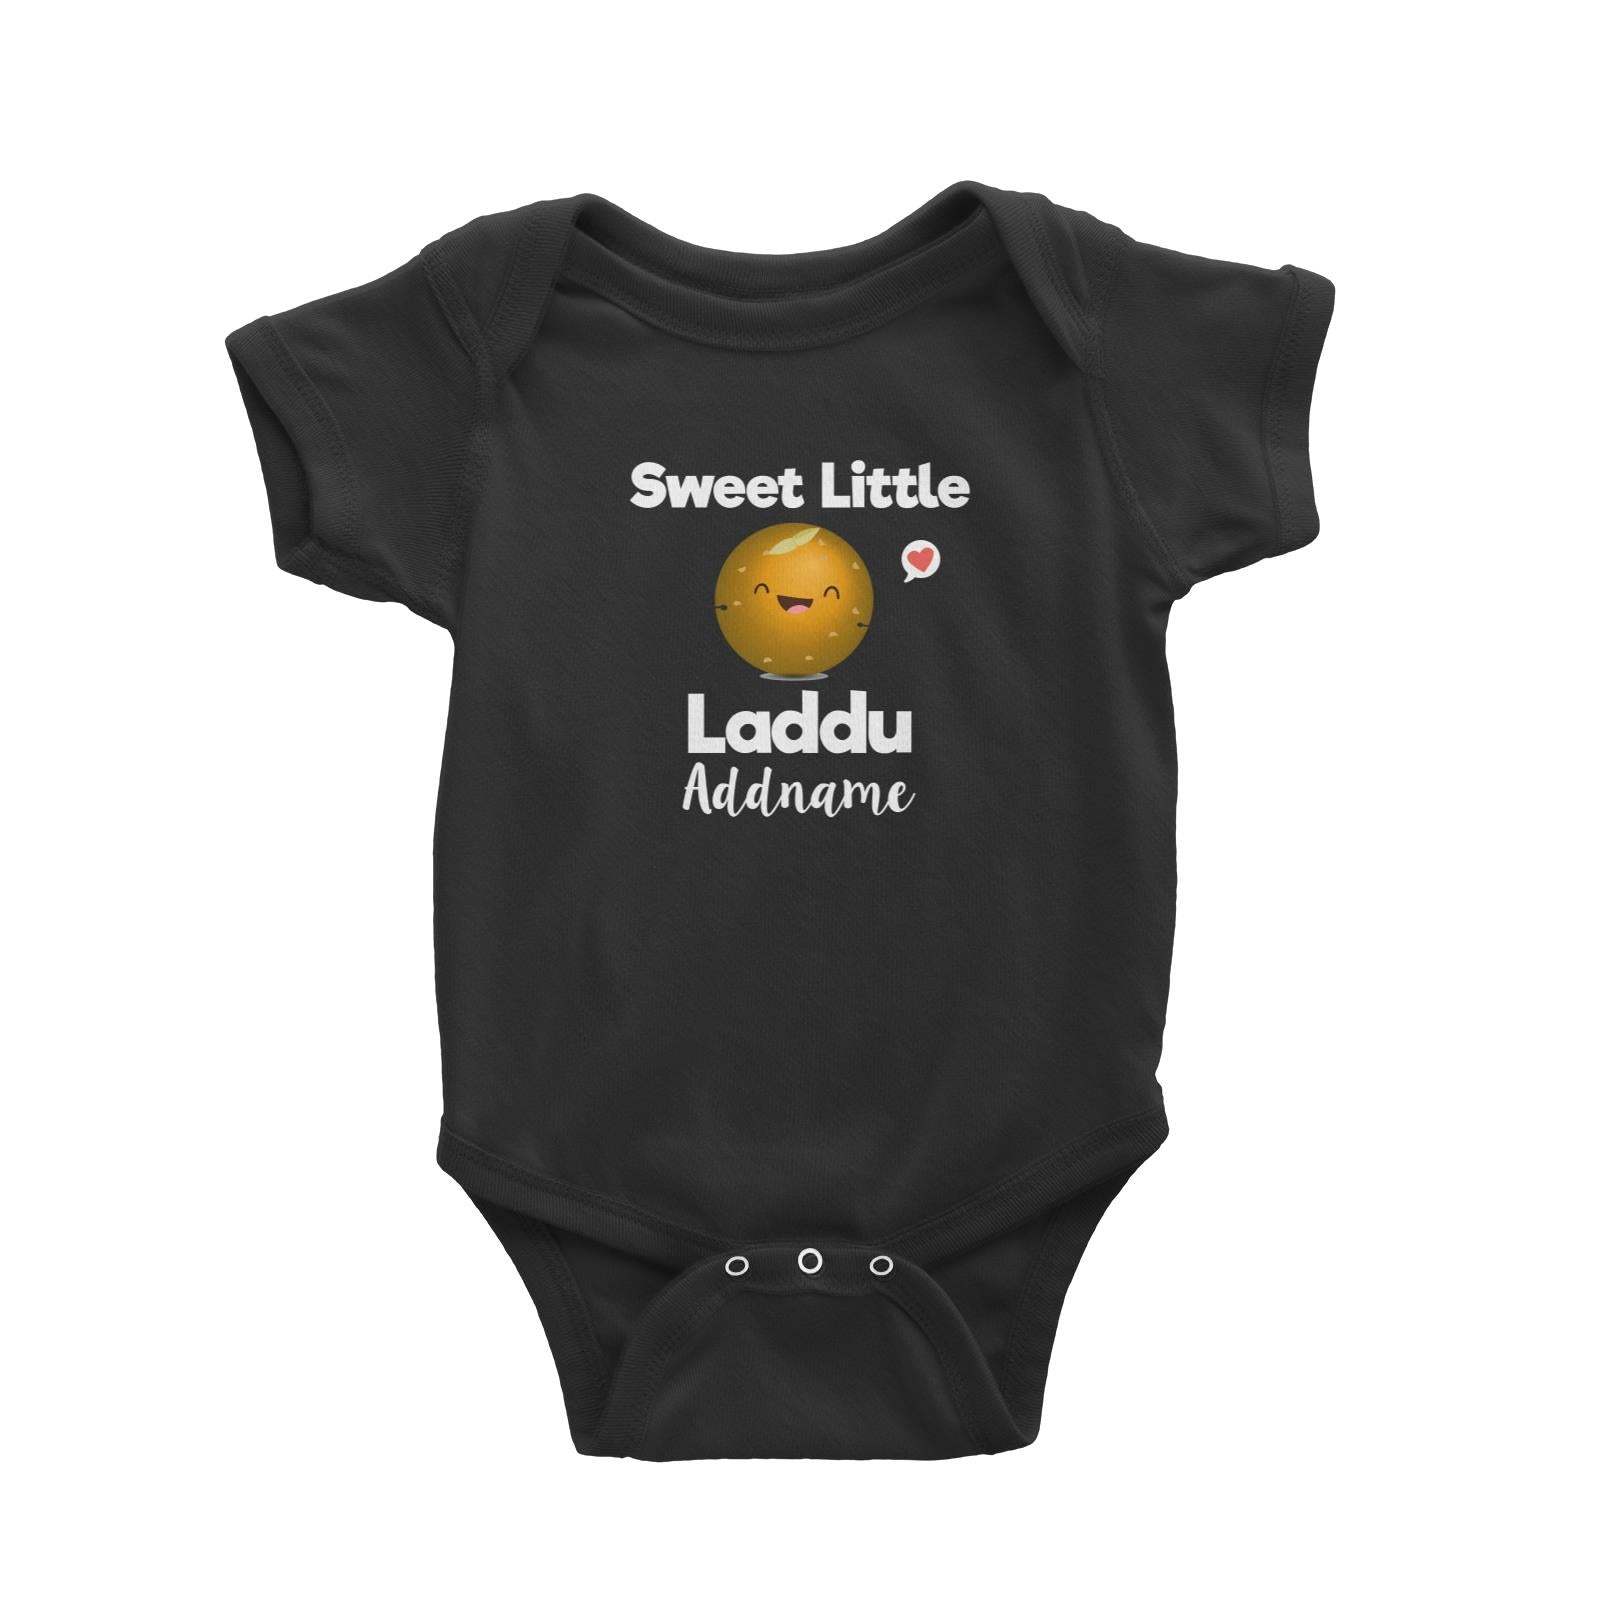 Sweet Little Laddu Addname Baby Romper